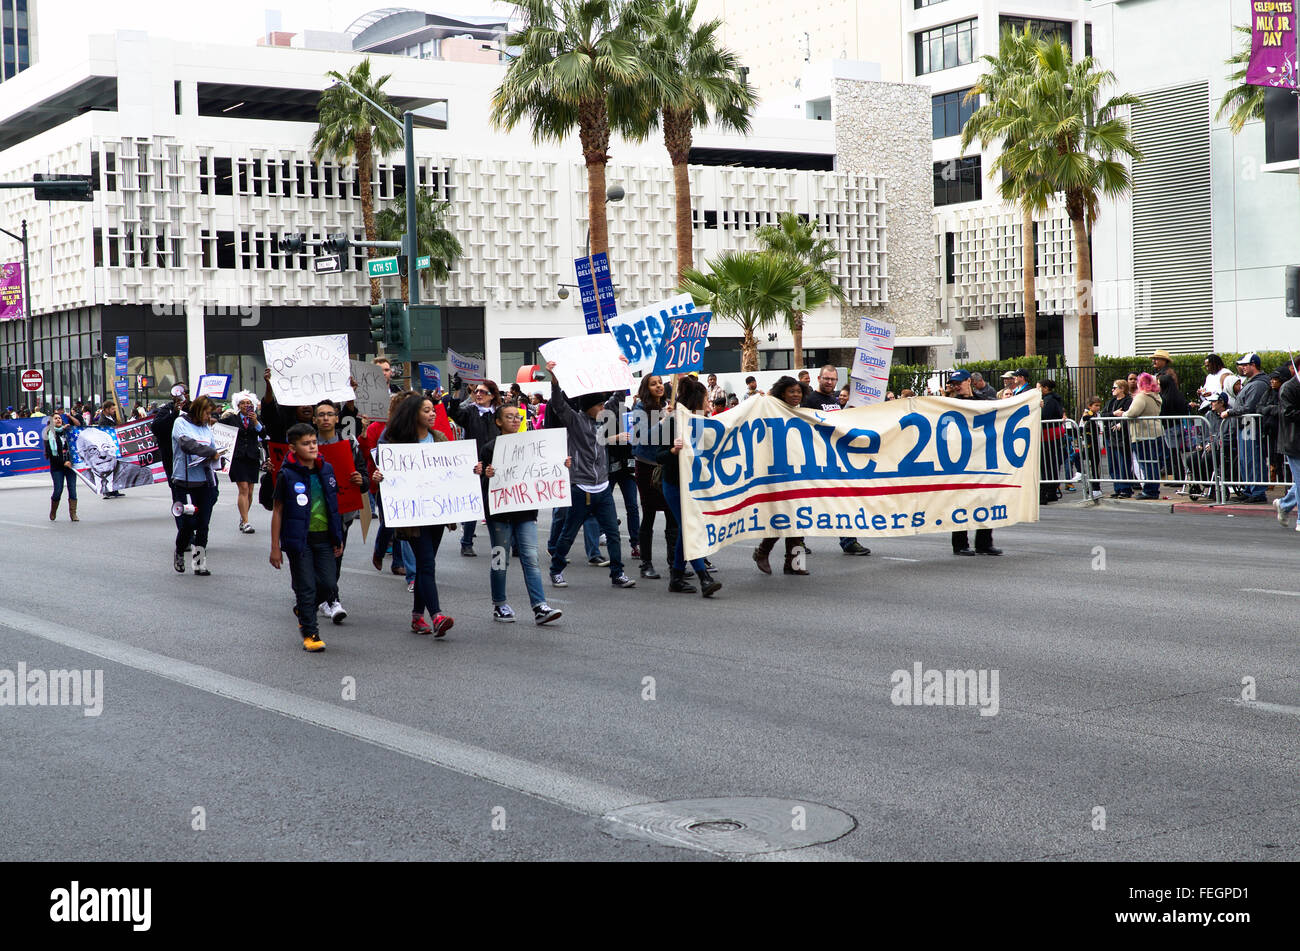 Los adultos jóvenes apoyando Bernie Sanders en el 2016 Las Vegas Marting Luther King Jr. desfile. Foto de stock